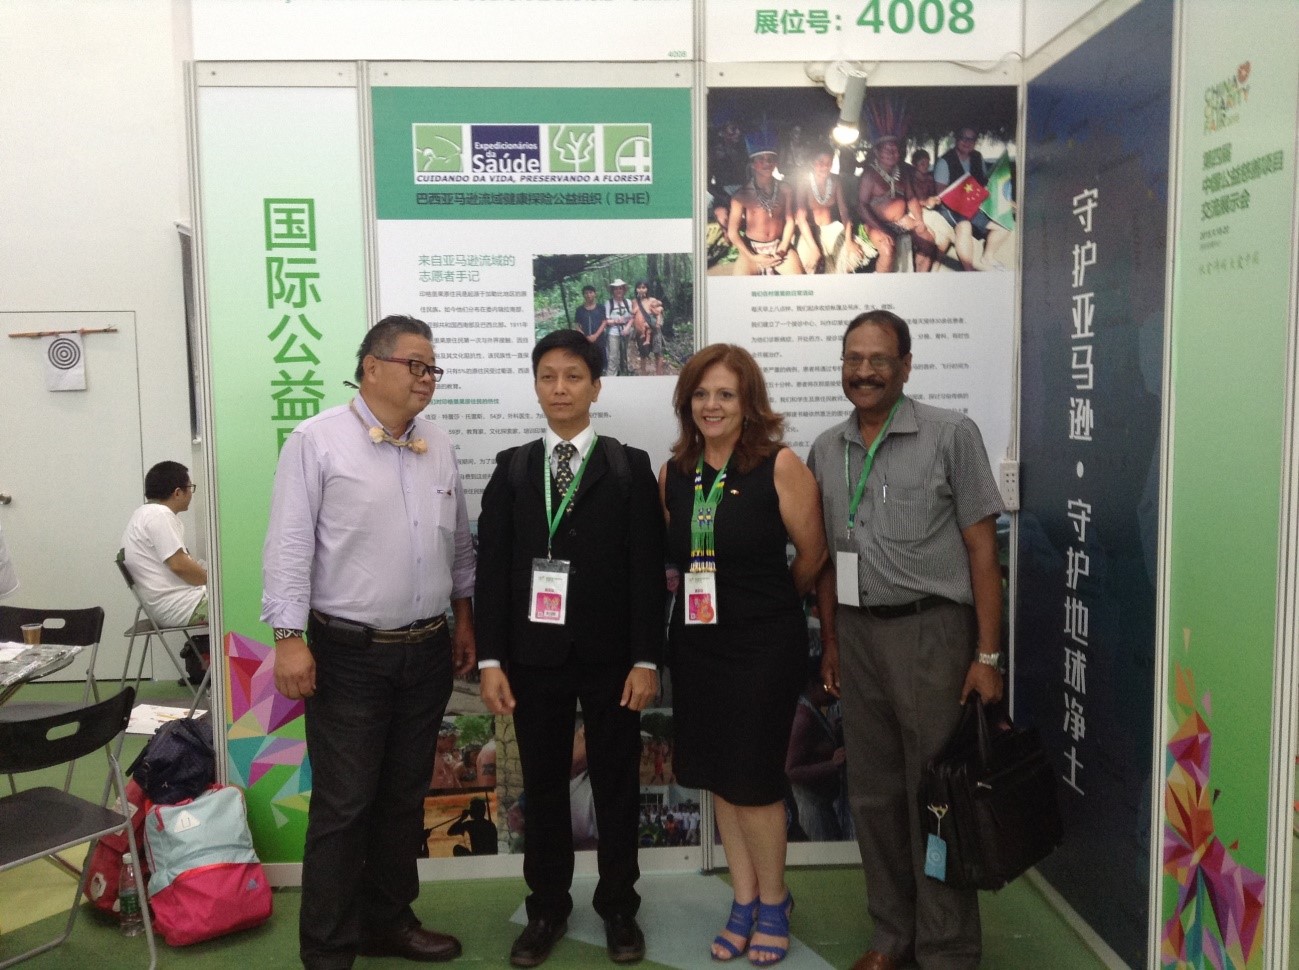 The 4th China Charity Fair-Expedicionários da Saúde